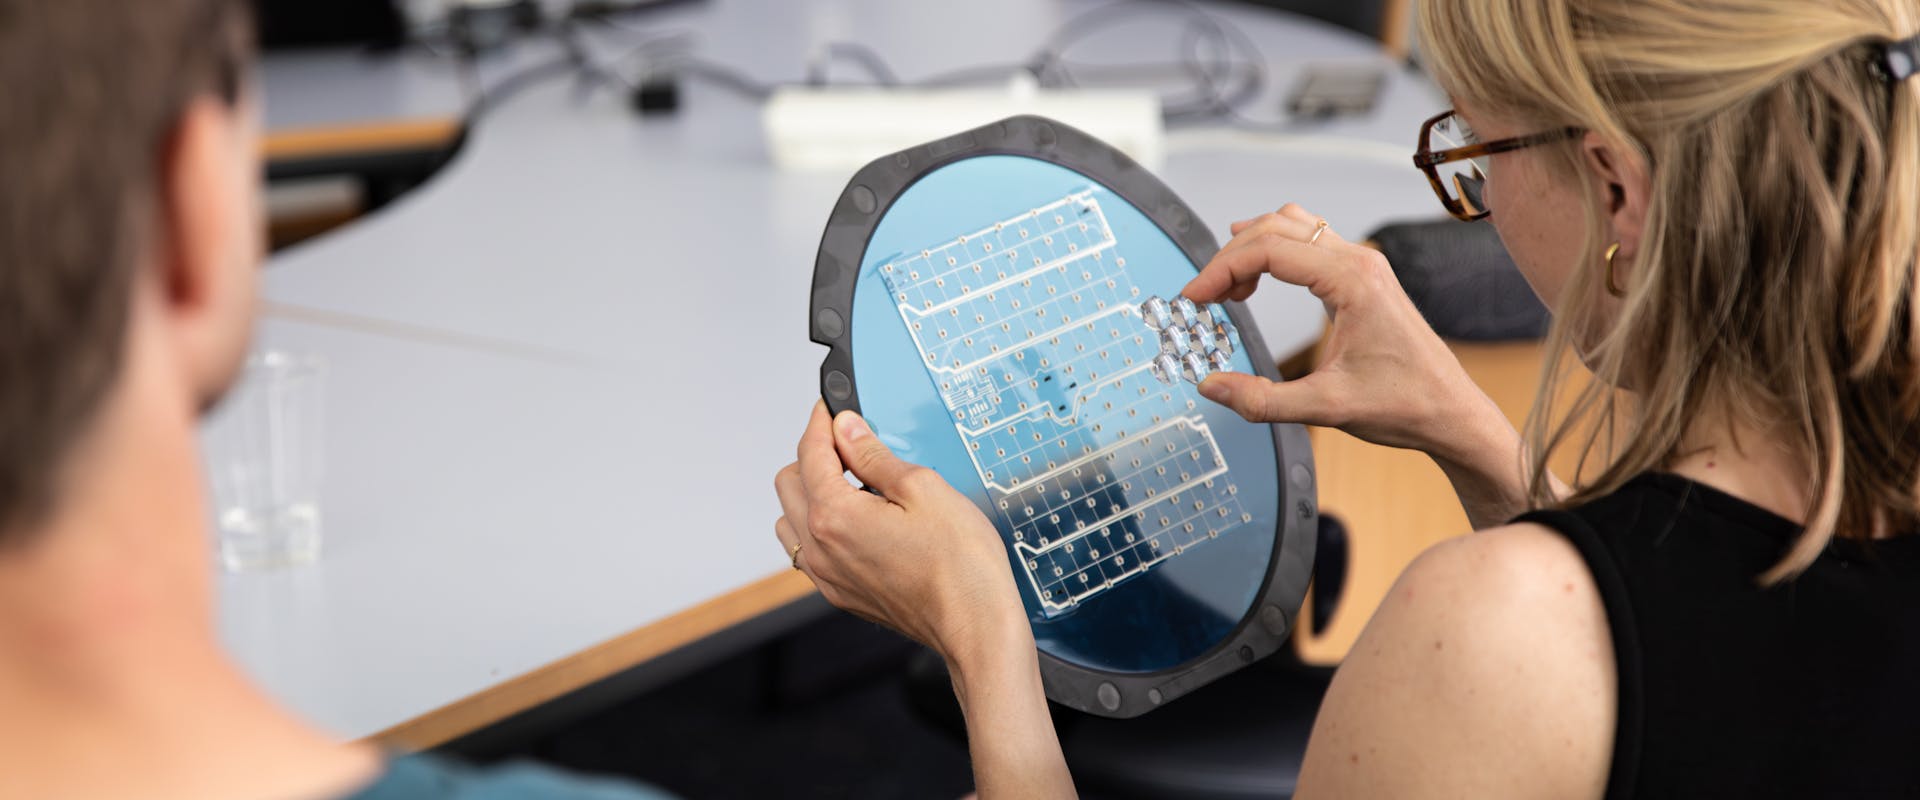 Frau inspiziert eine Solarzelle